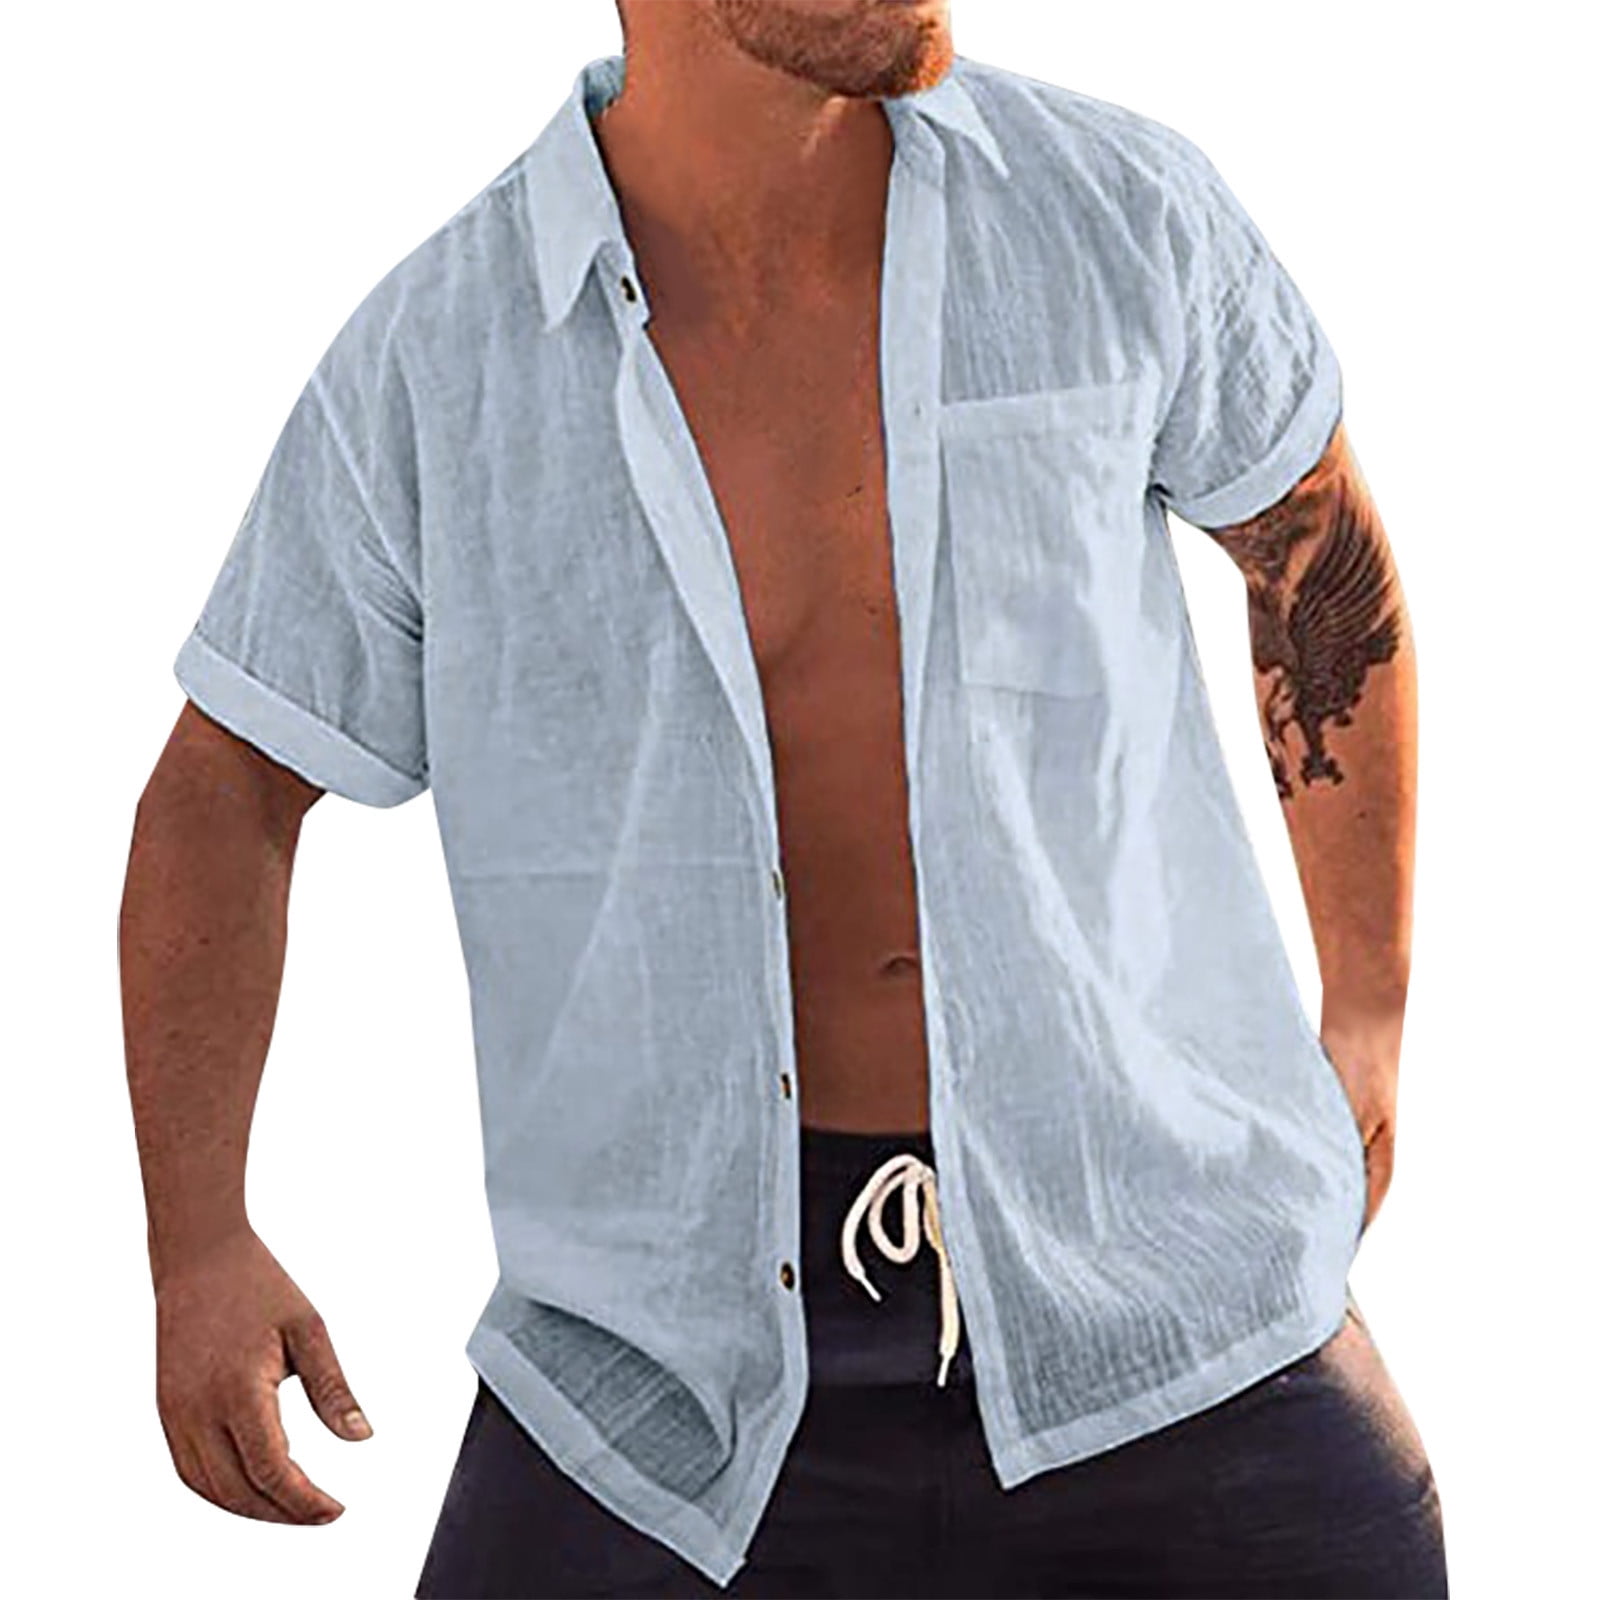 Men's Shirts Short Sleeve Baggy Cotton Linen Shirt Tops Button Retro Gradient Blouse Tops Summer Lightweight Tee 